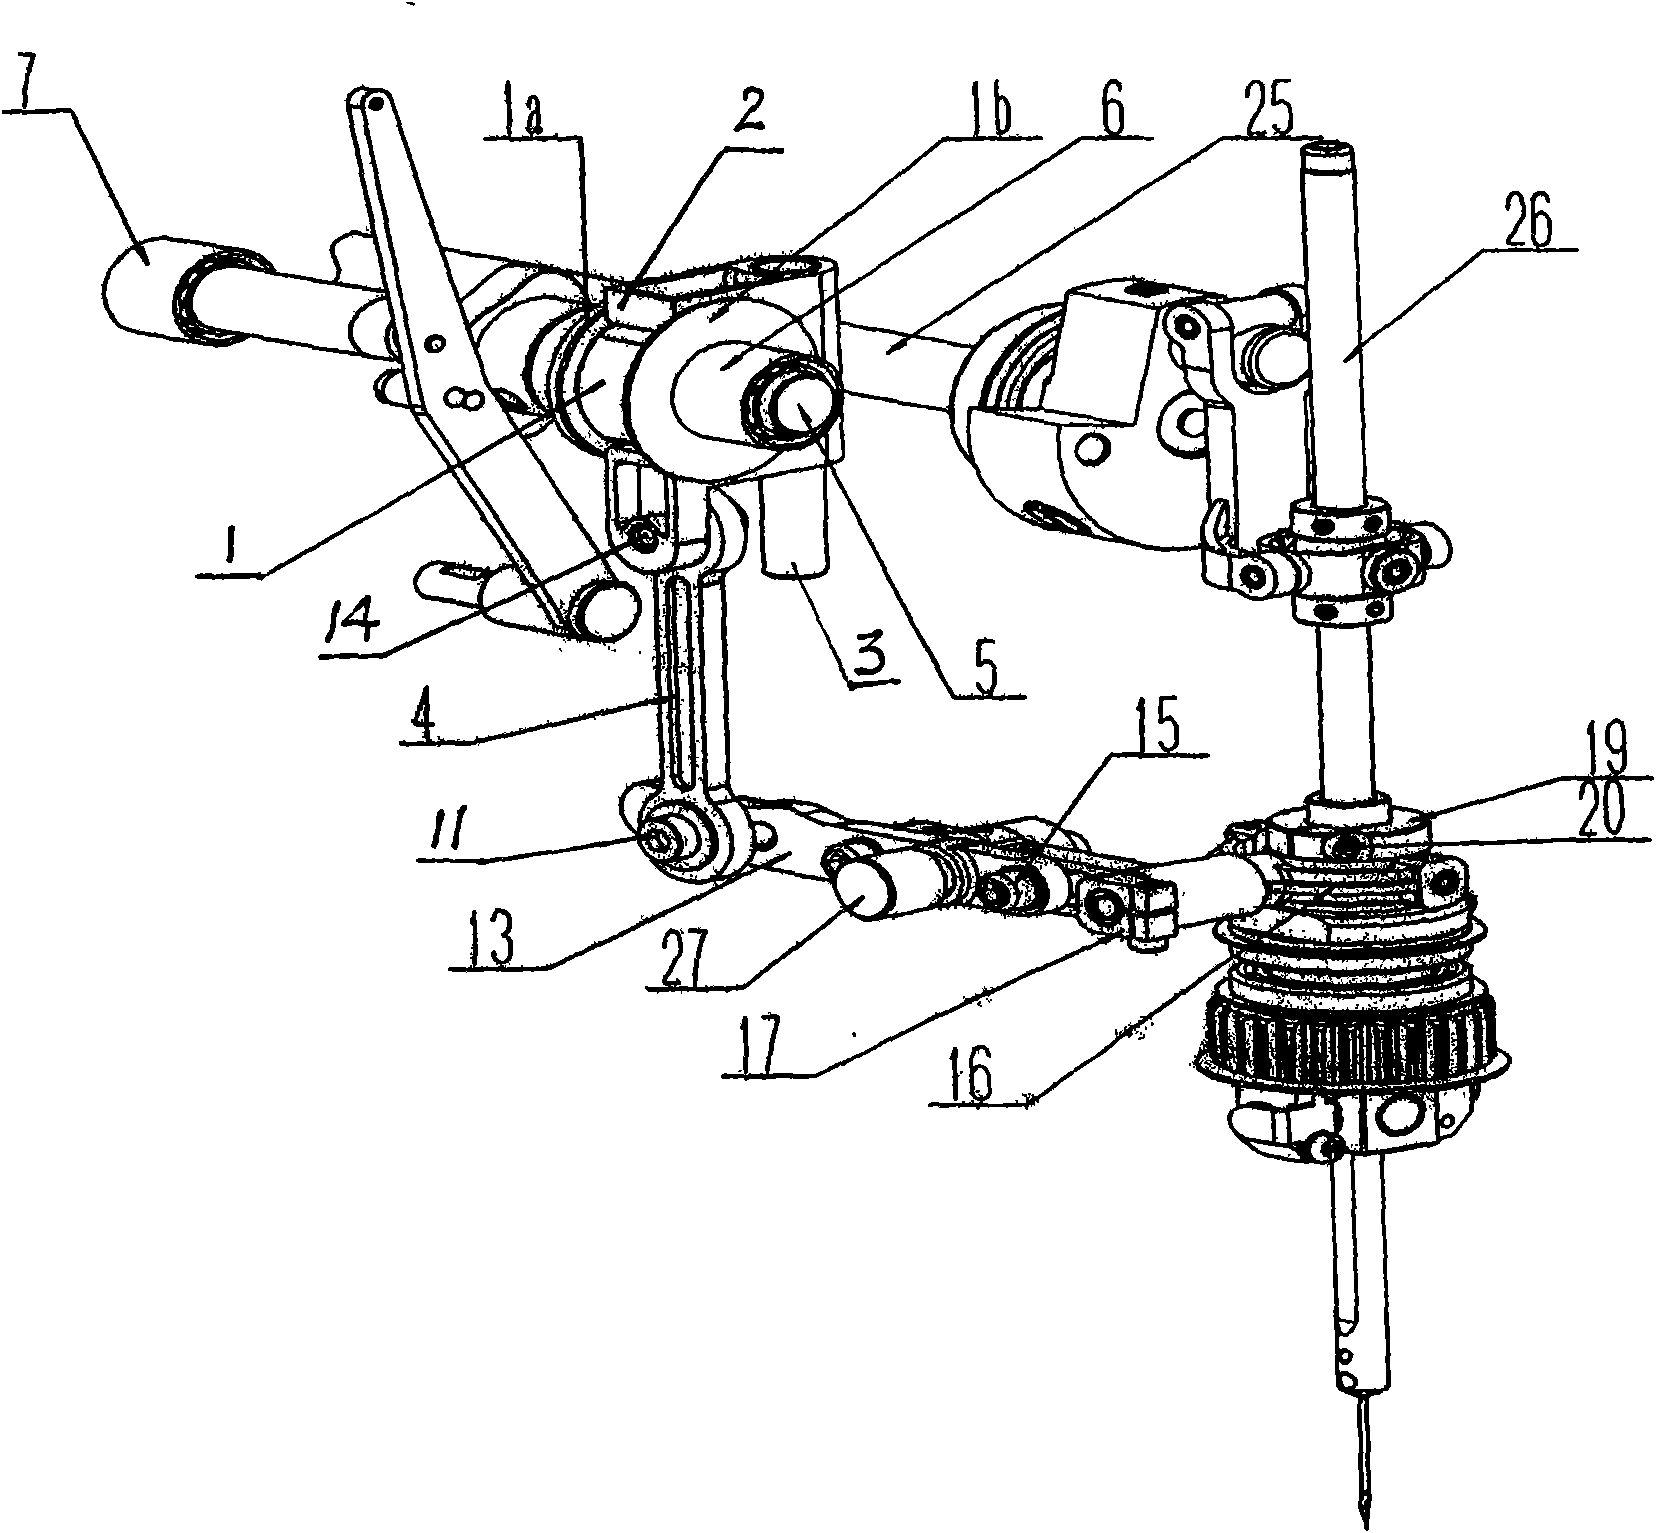 Buttonhole sewing machine